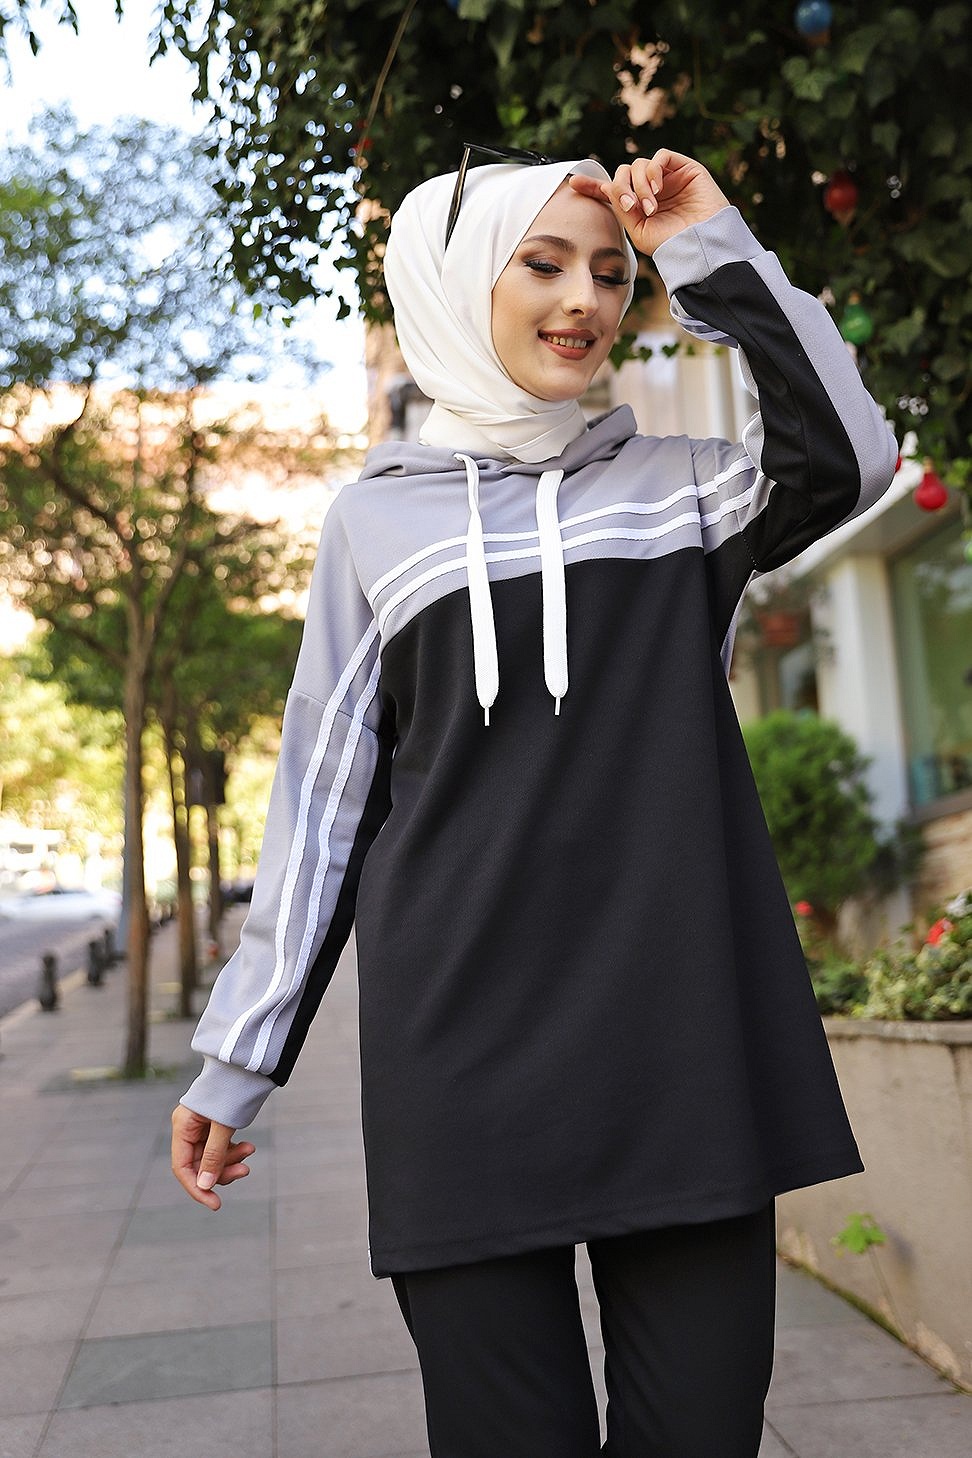 Survêtement tricolore à capuche imprimé Breathe (Sportswear femme voilée)  - Couleur Bleu de Chanel, noir et blanc